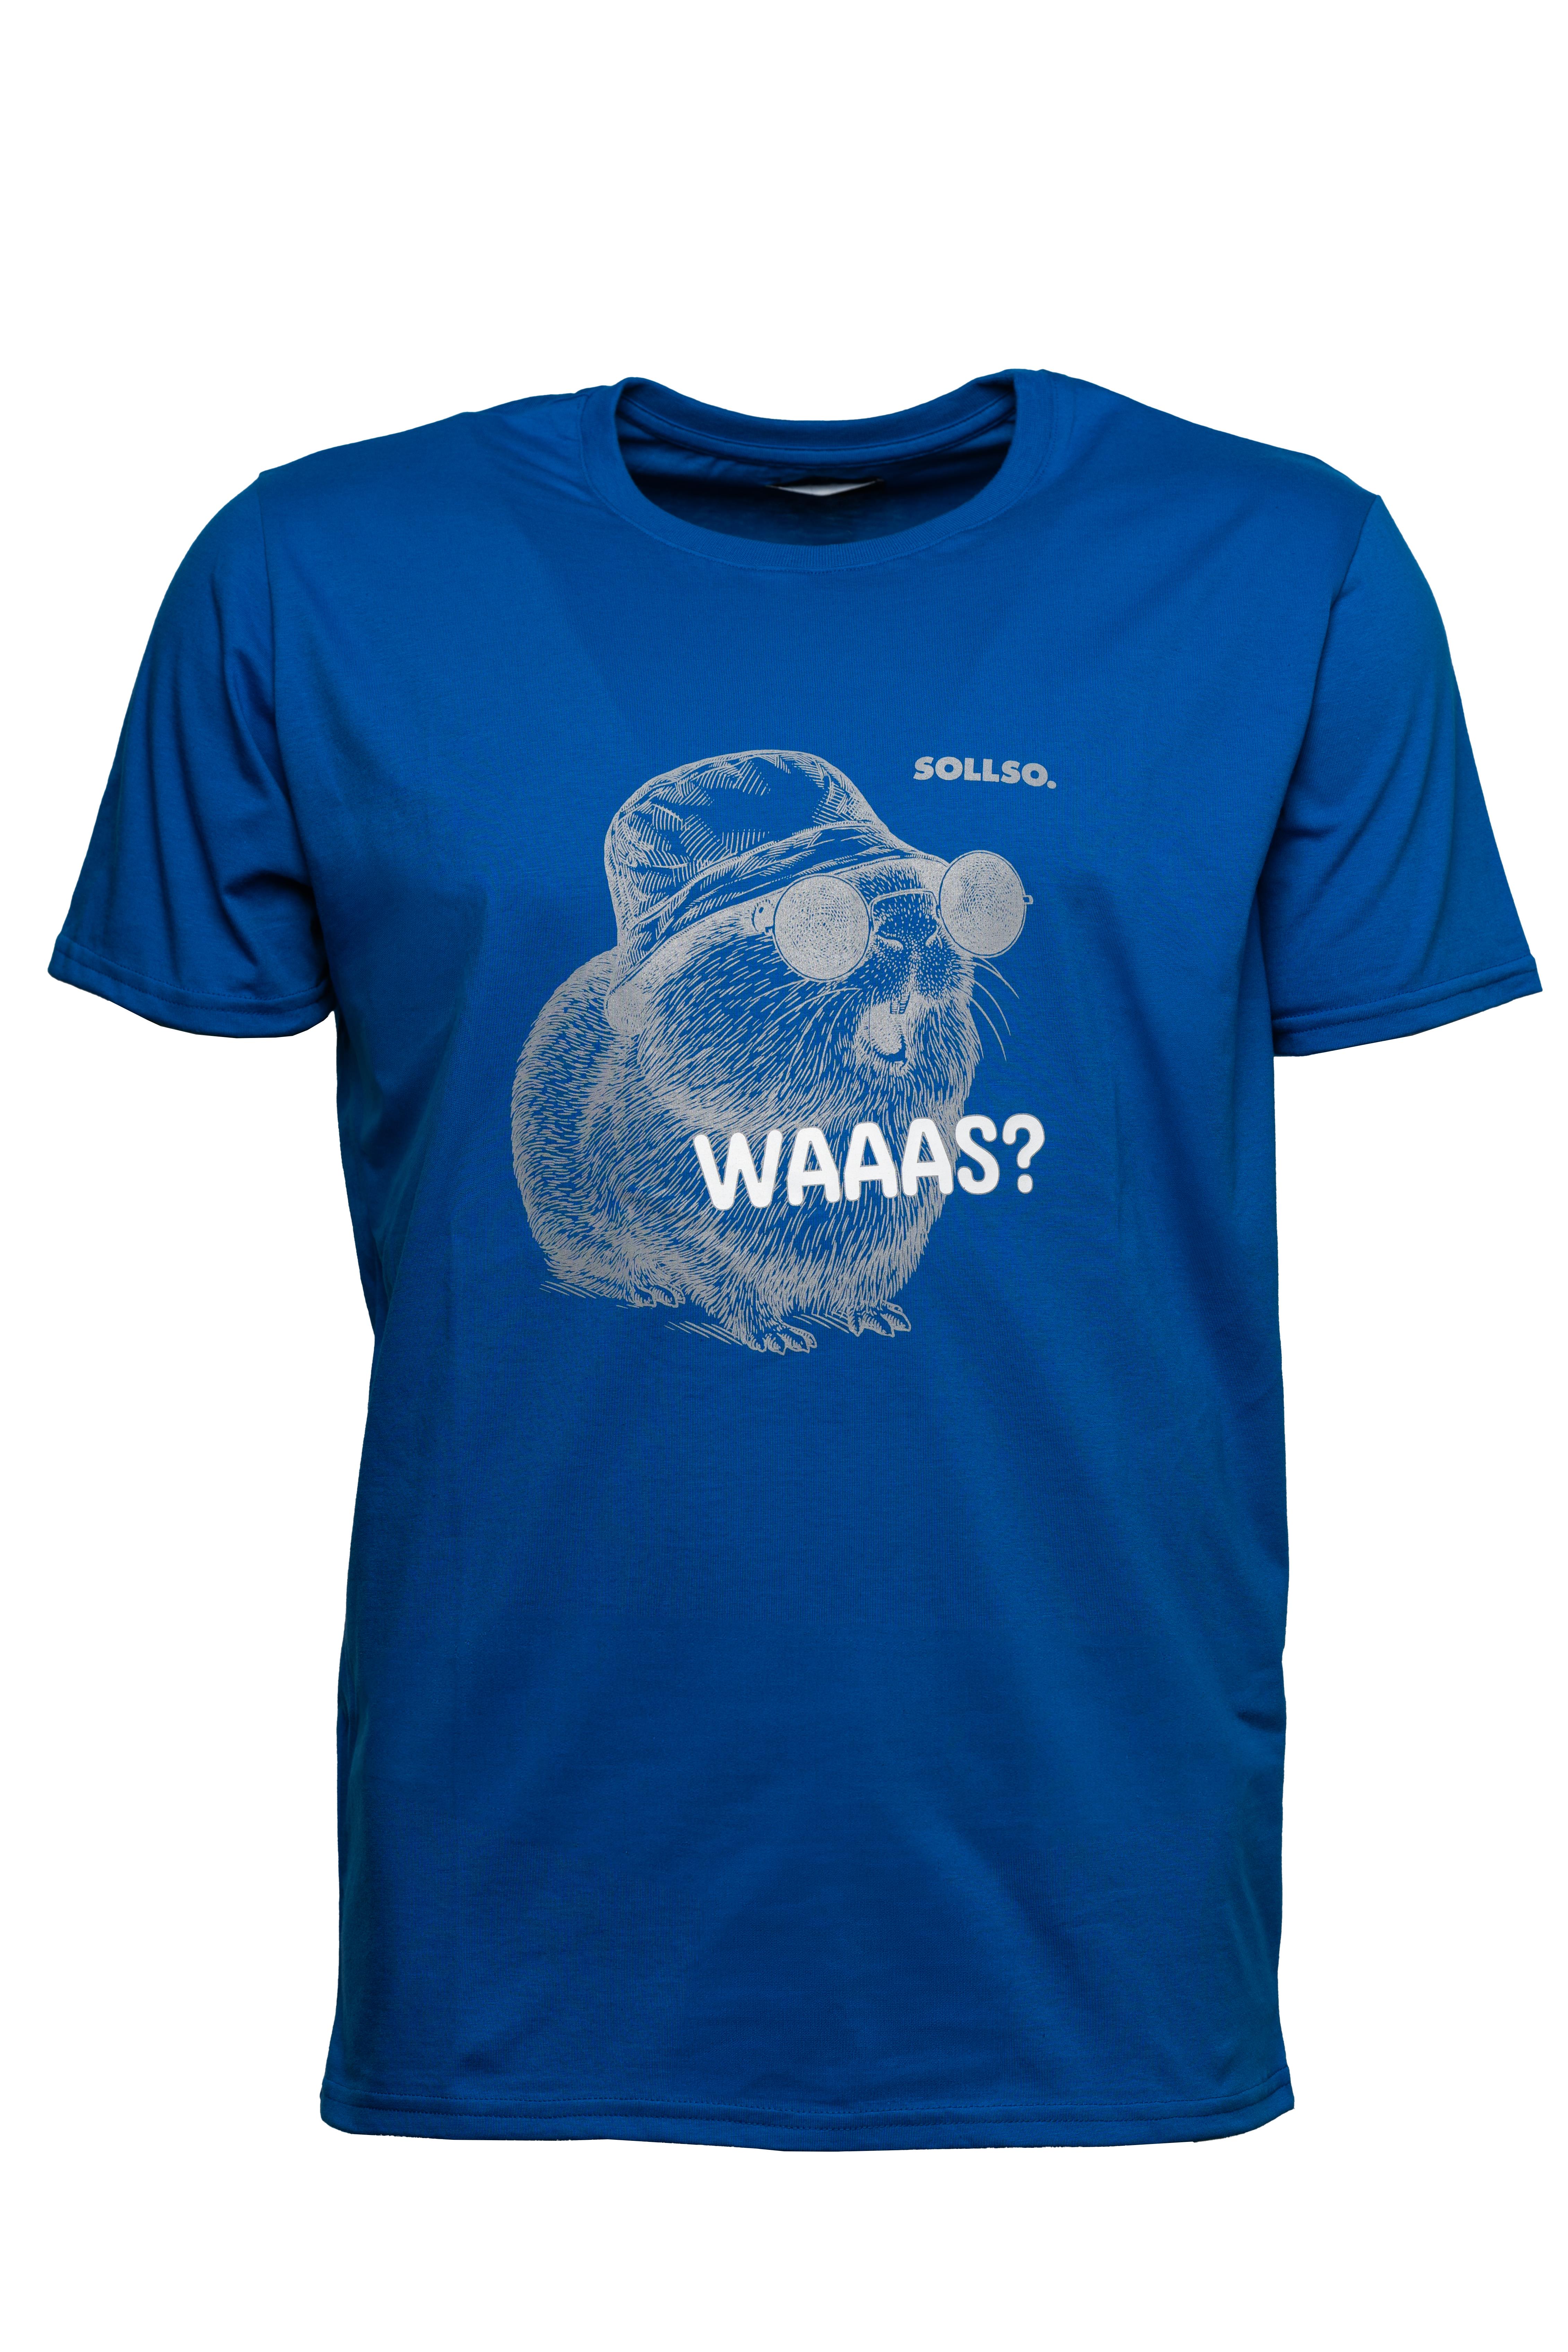 SOLLSO. T-Shirt "Guinea Pig" Farbe Ocean Blue, Größe 3XL